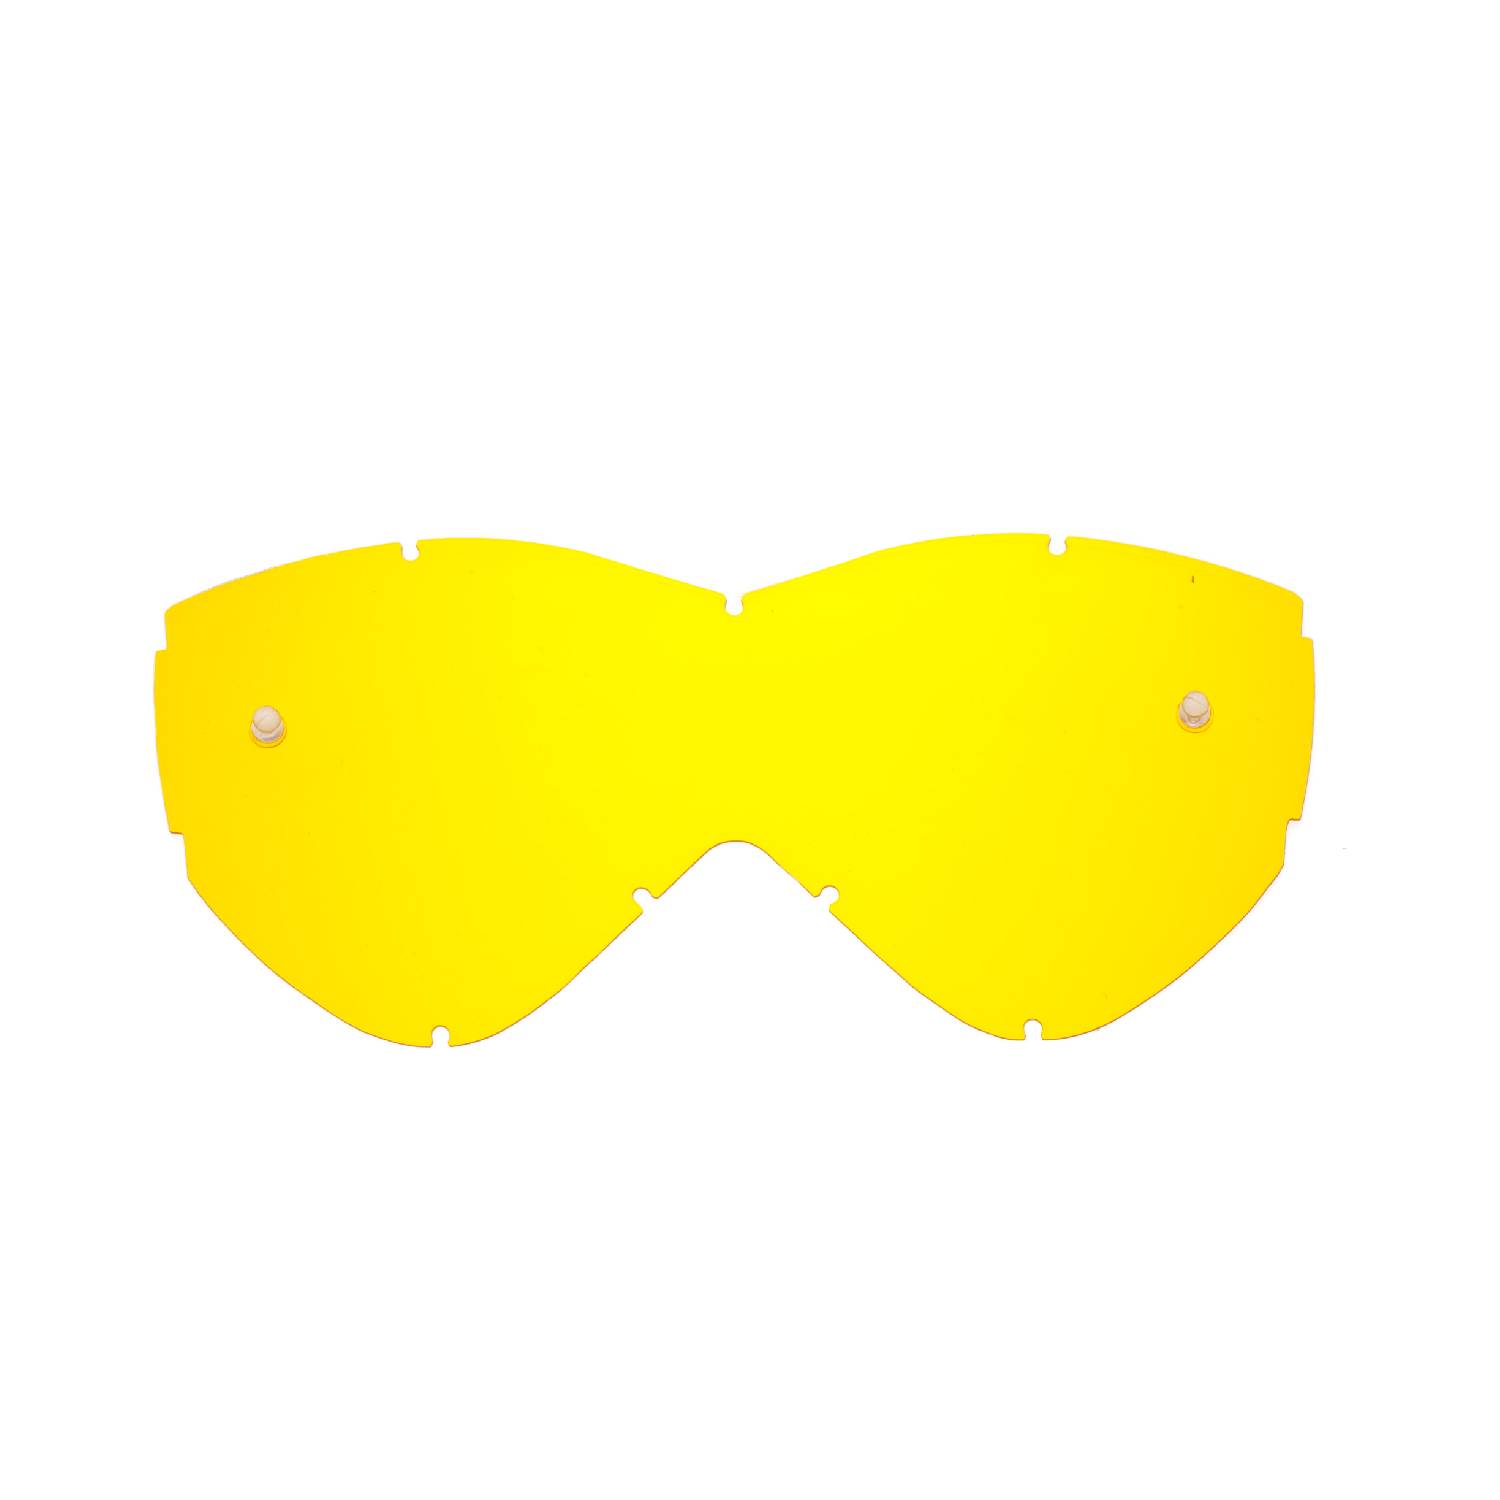 Lente di ricambio gialla compatibile per occhiale/maschera Smith Warp